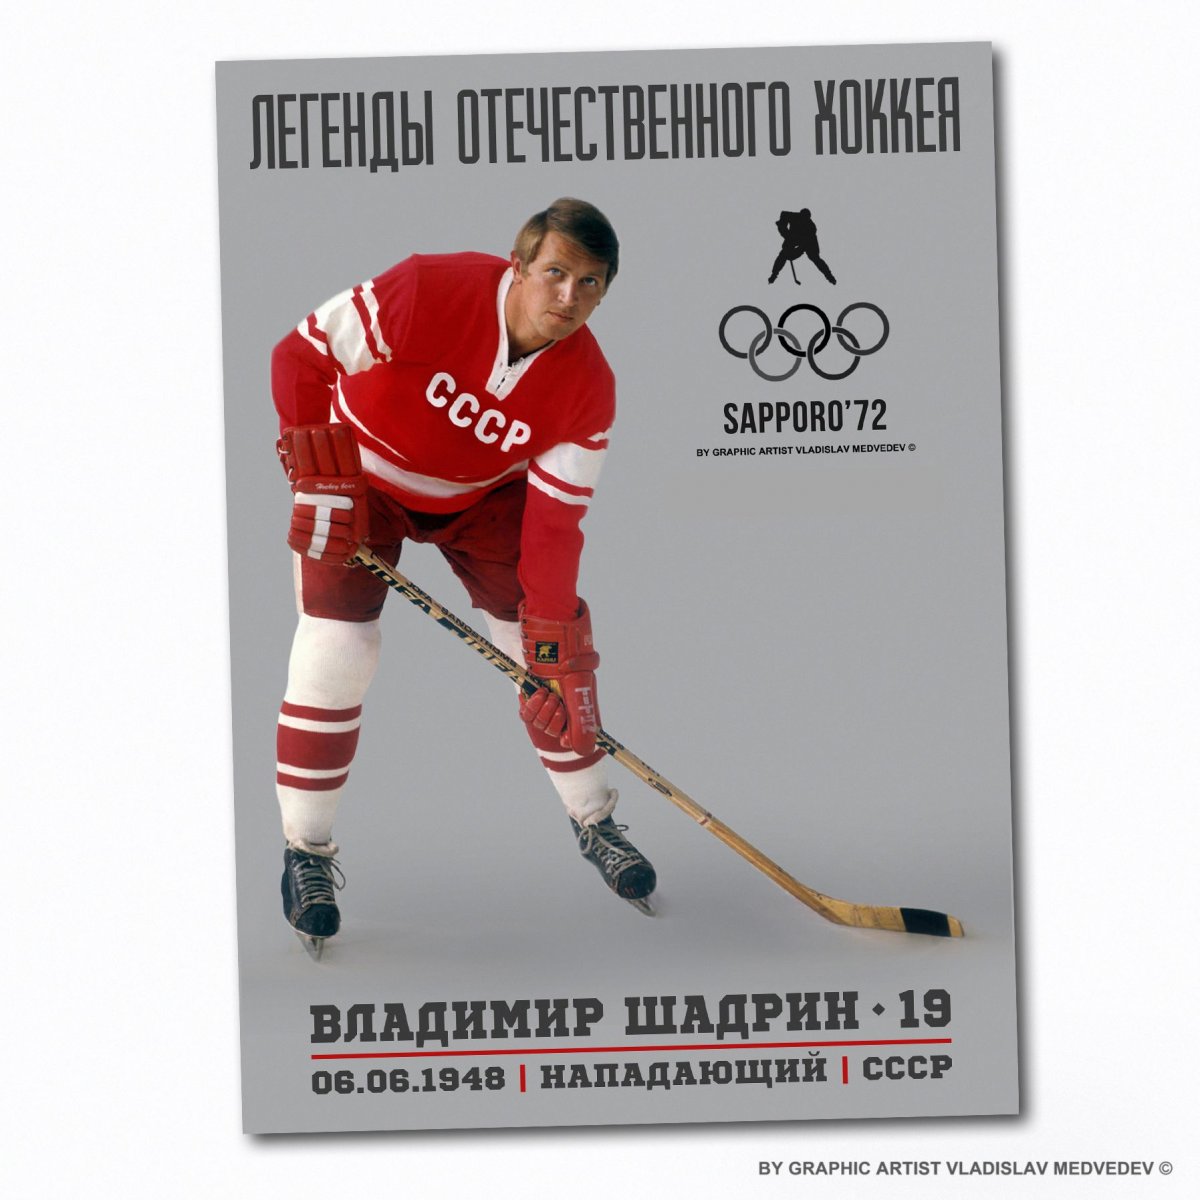 ЦСКА 1988 хоккей